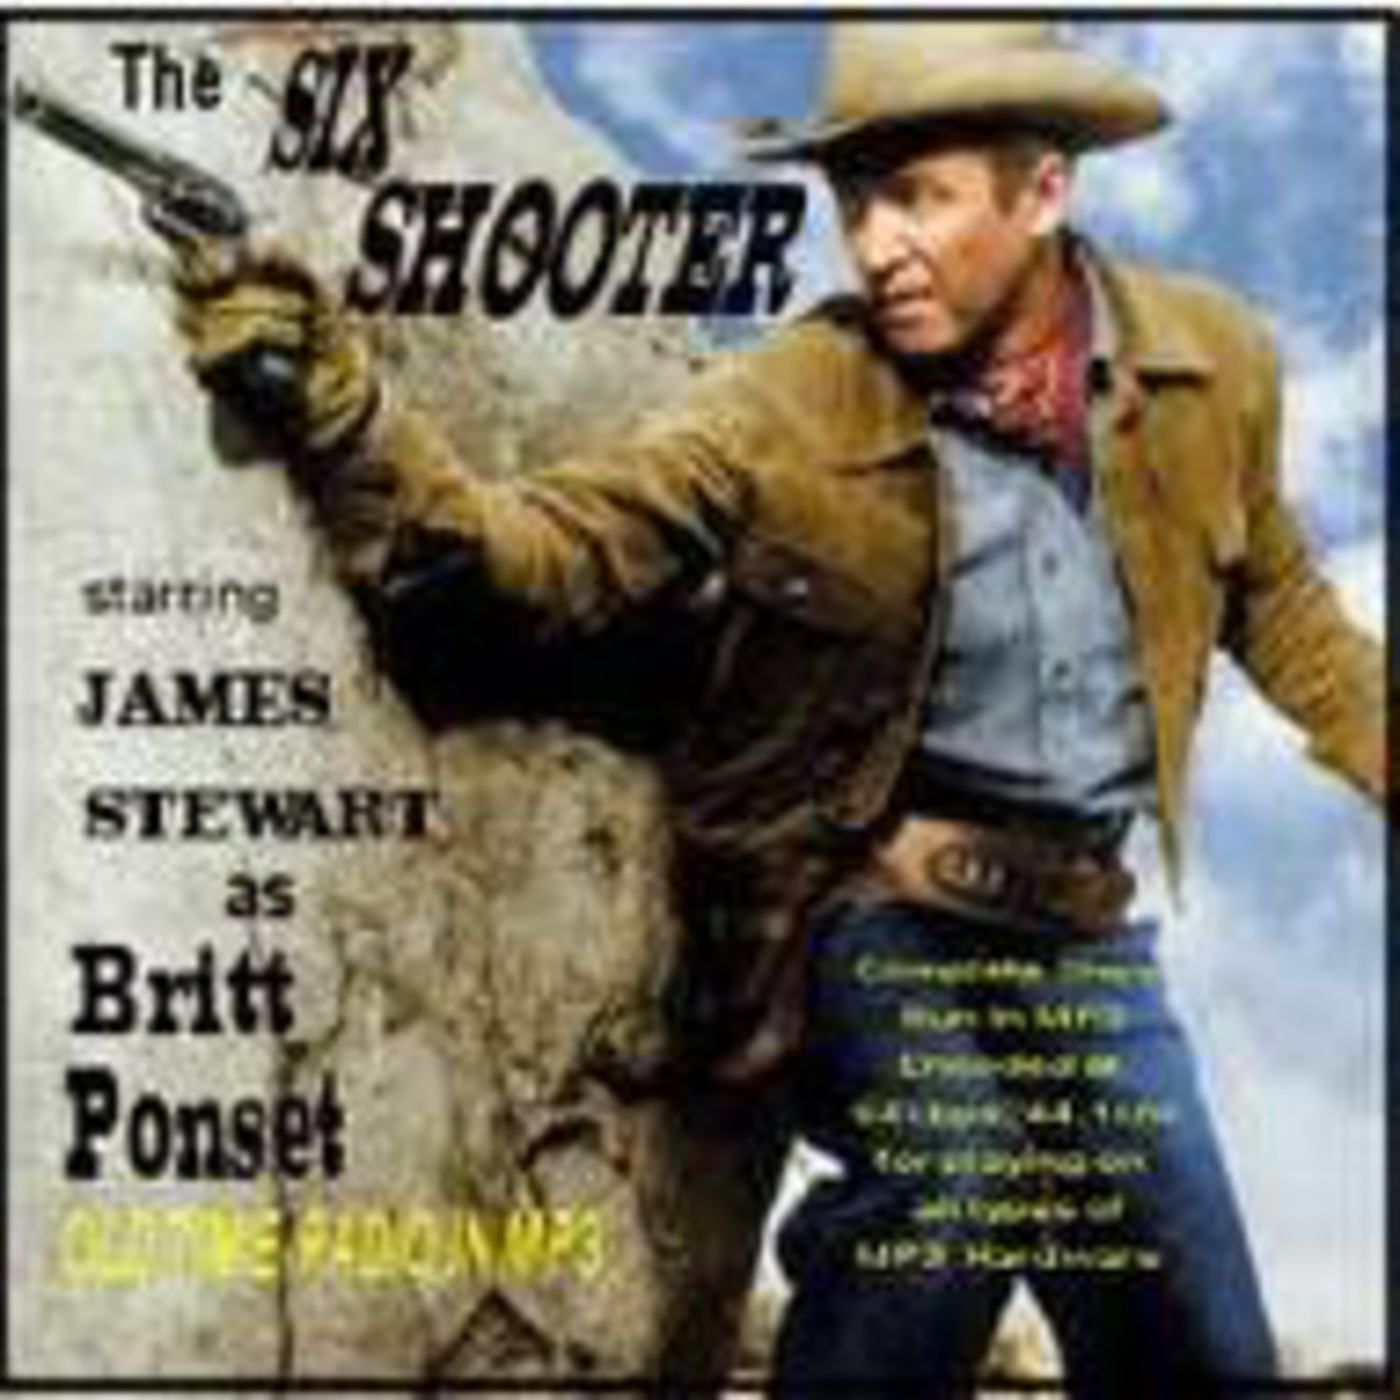 Jimmy Stewart as The Six_Shooter_540624_Myra_Barker